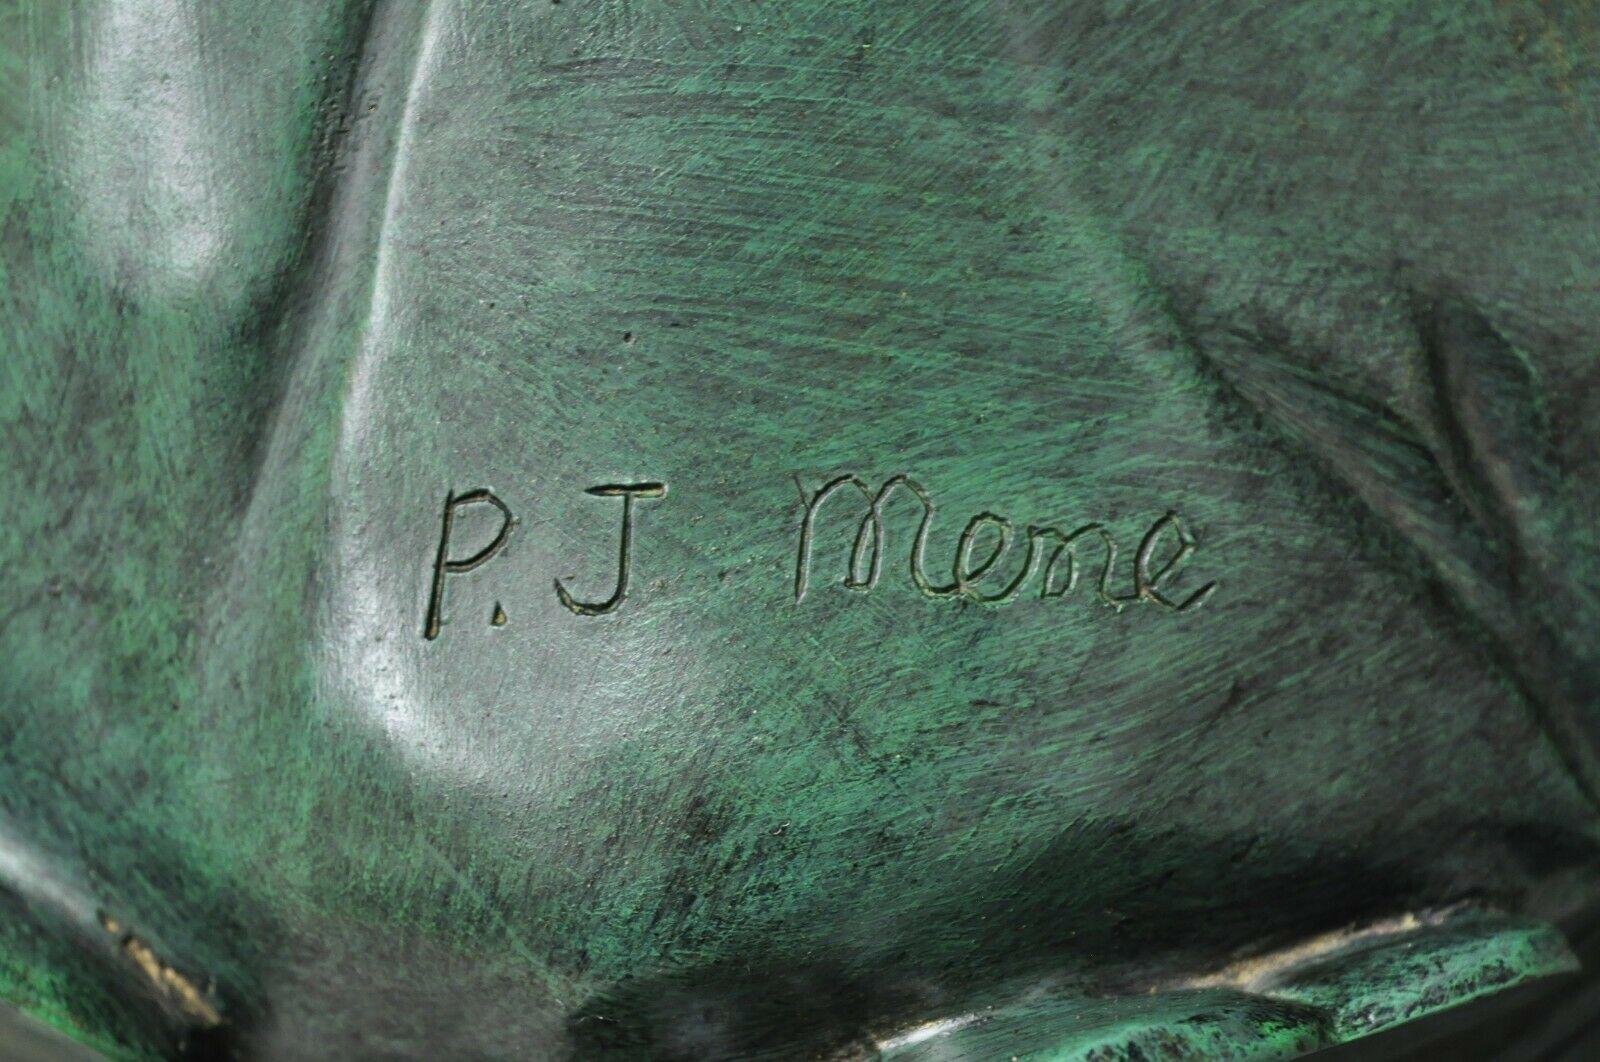 Cast Bronze Figural Lion Sculpture Marble Top Pedestals After P.J Mene, a Pair For Sale 1